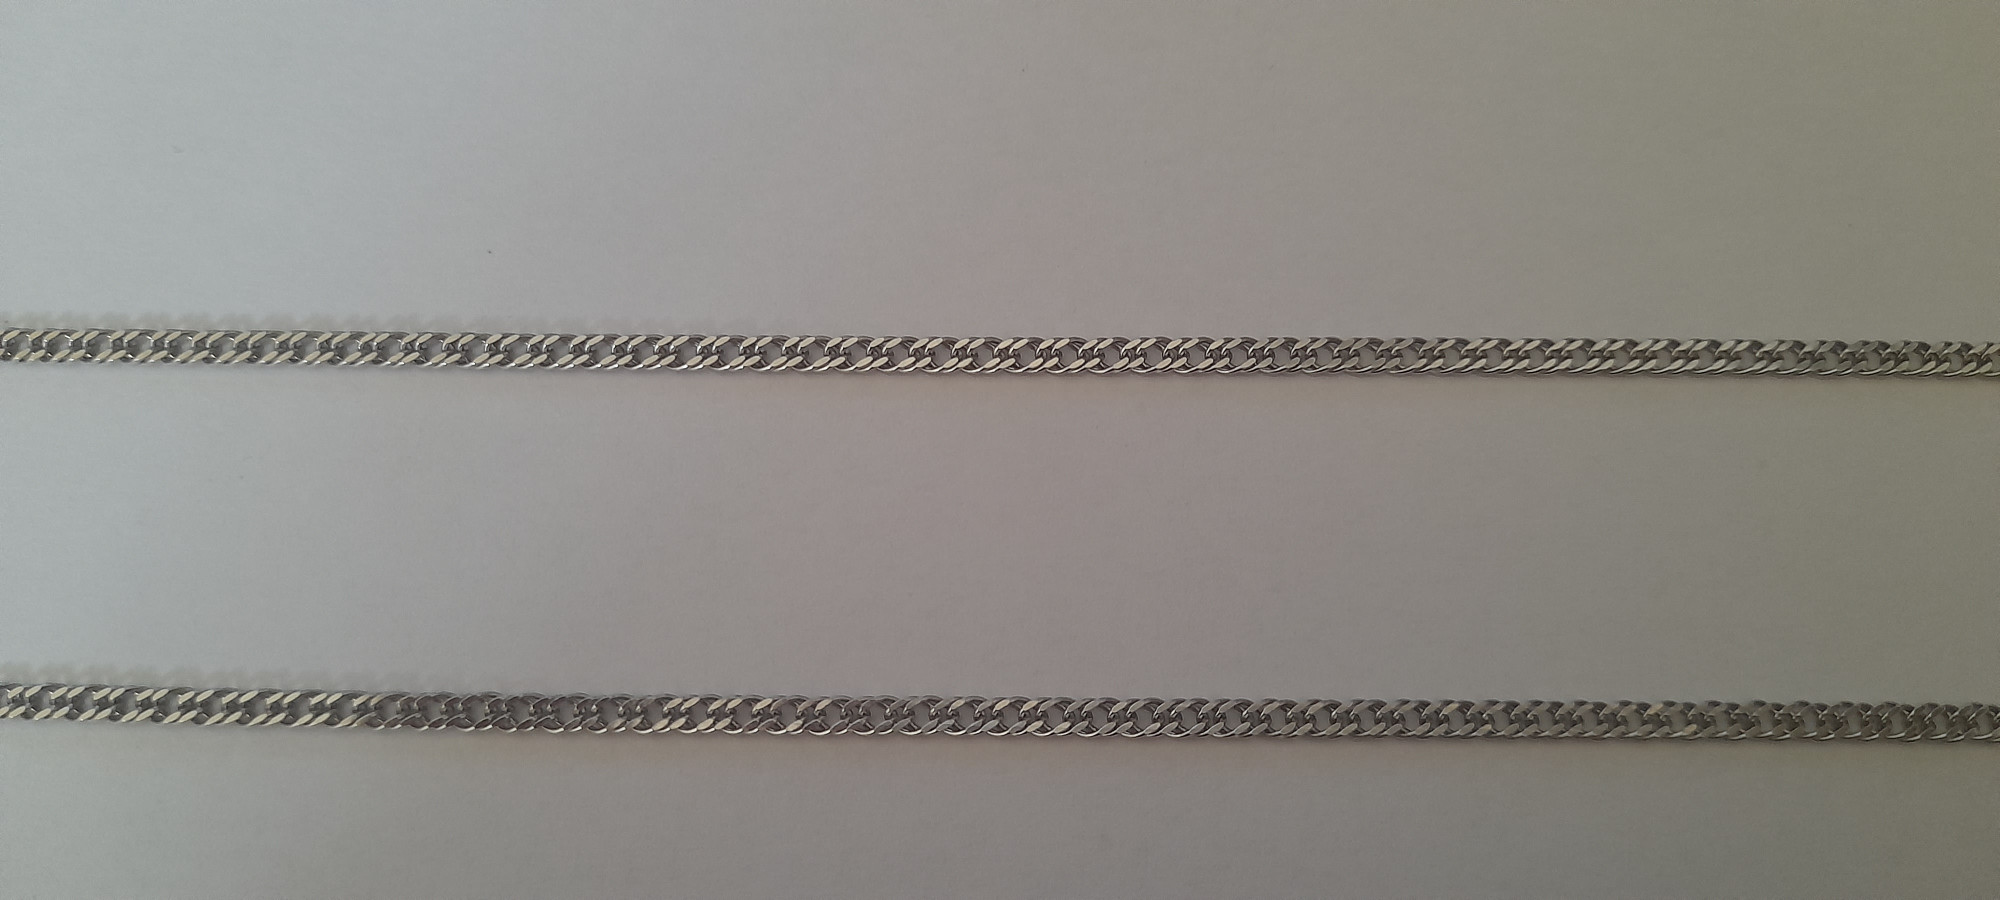 Серебряная цепь с плетением Двойной ромб (30826421) 1